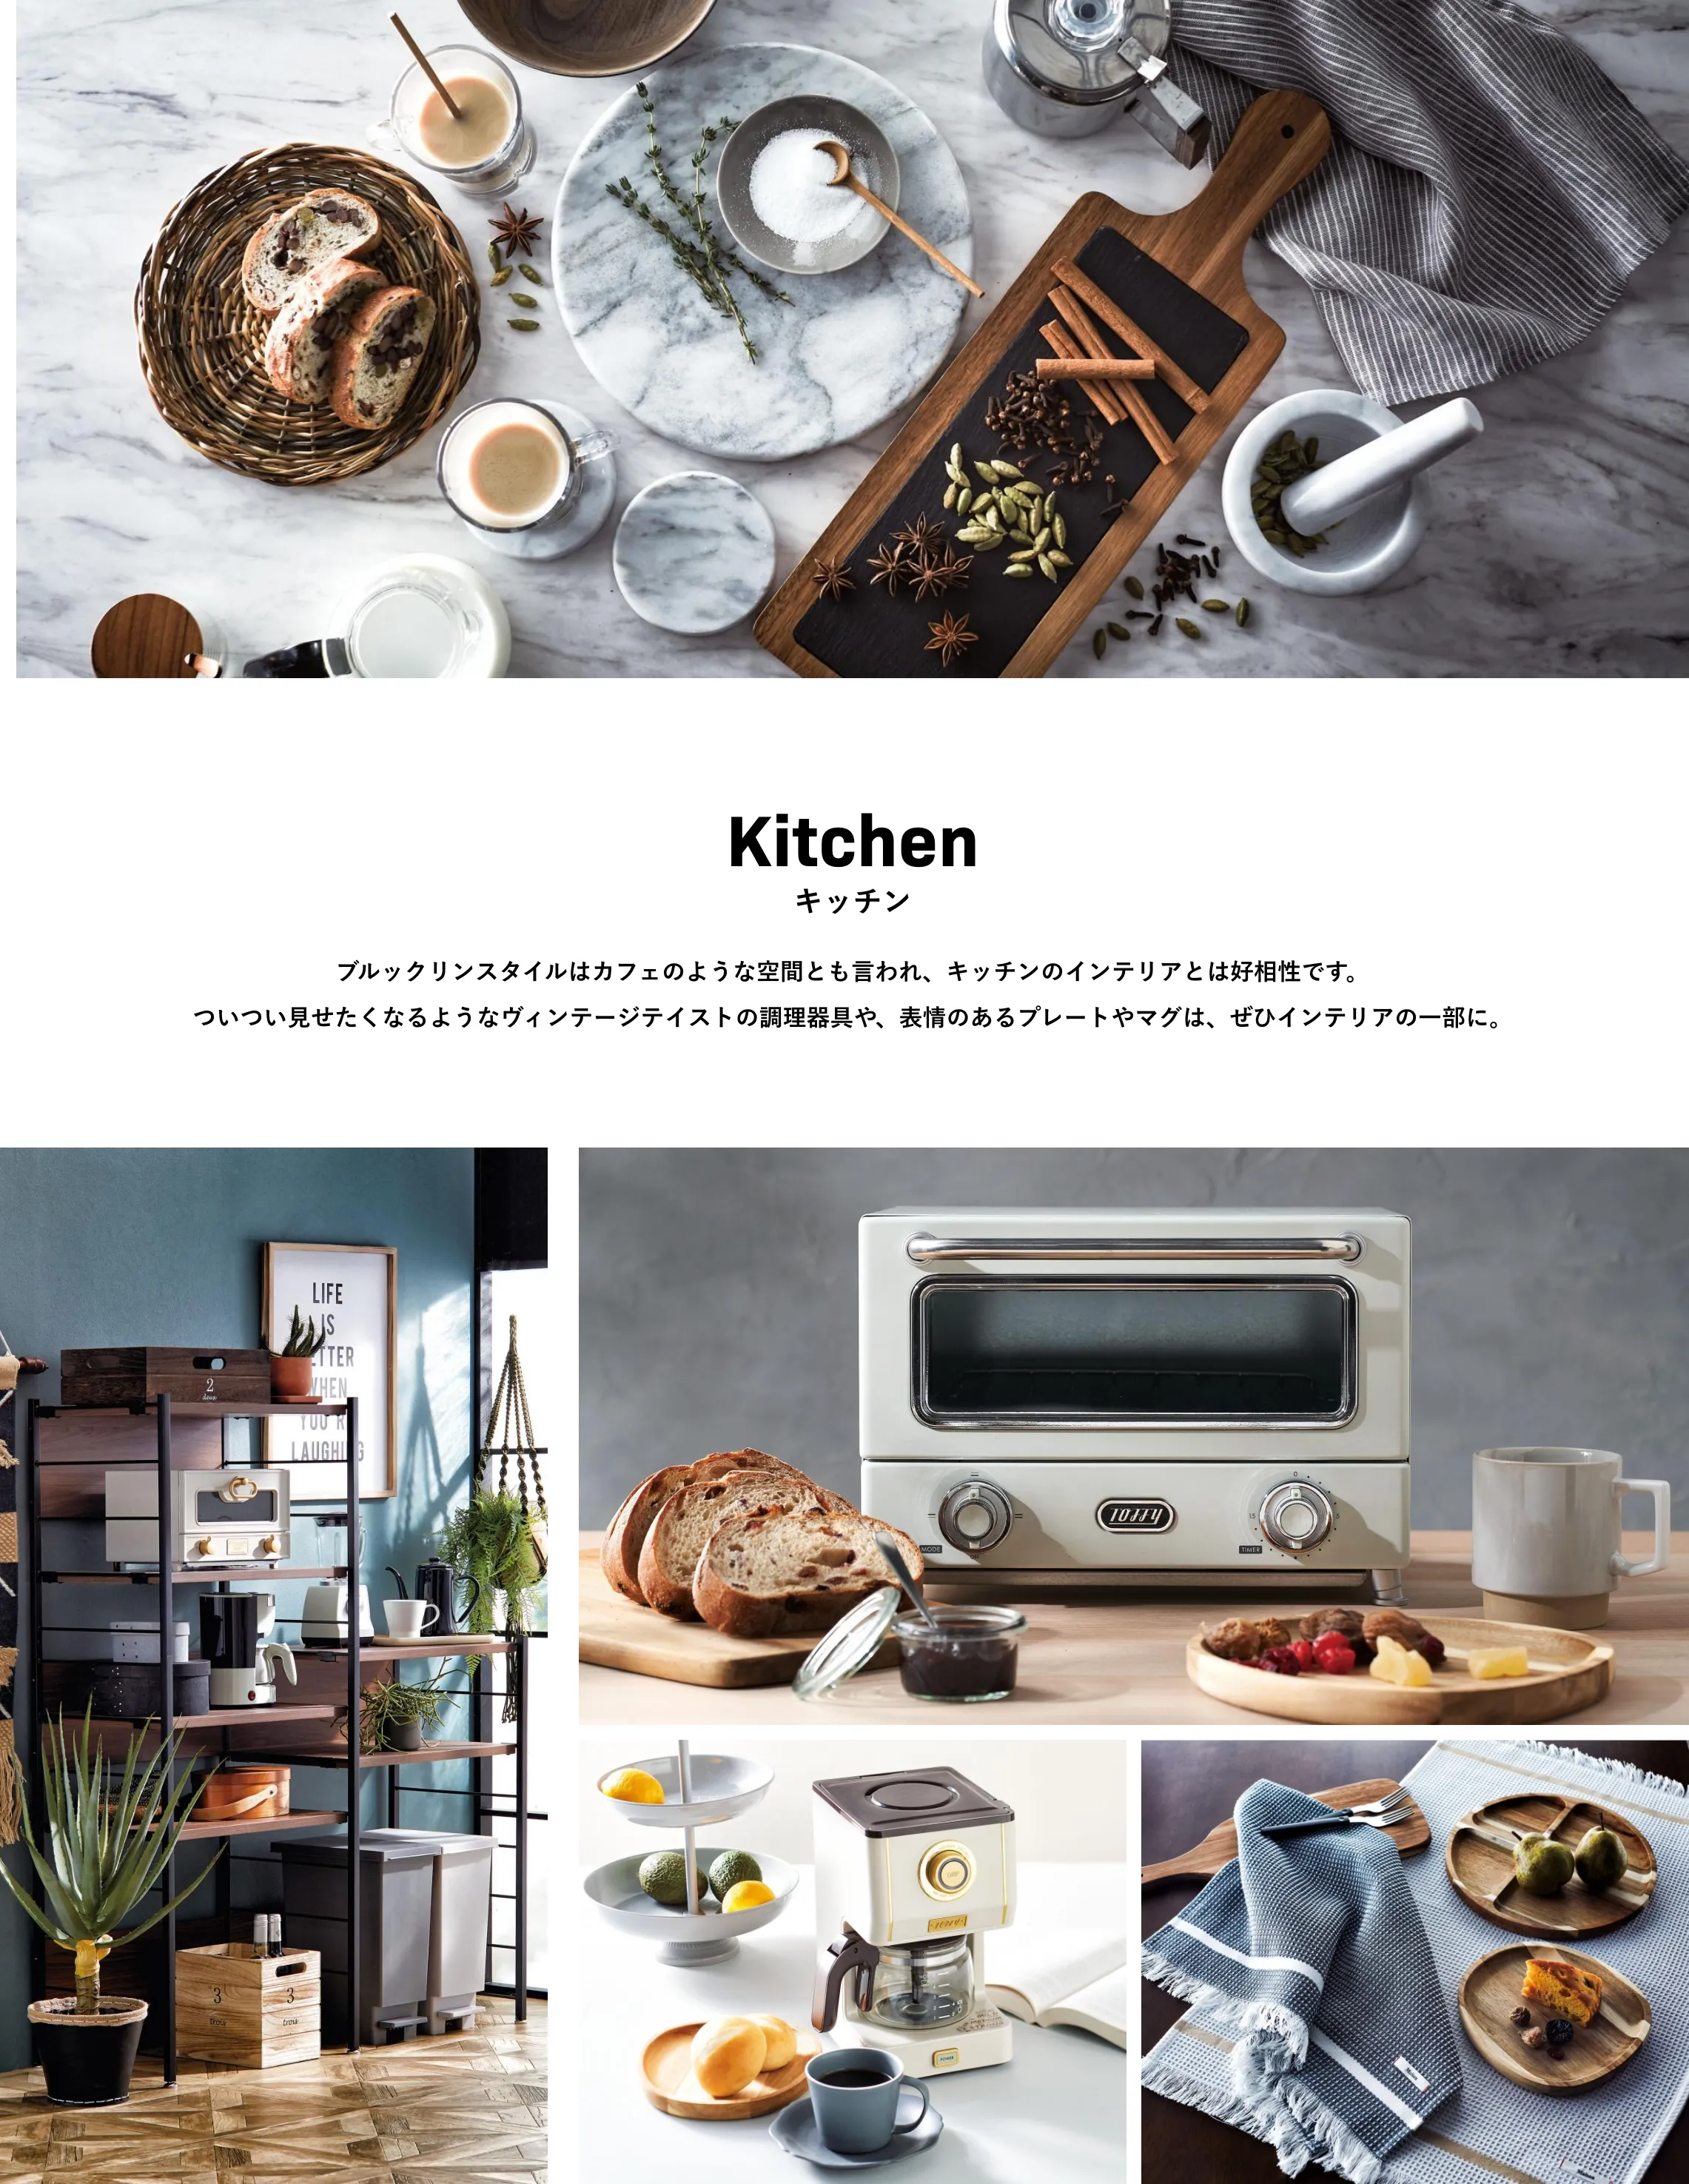 Kitchen キッチン ブルックリンスタイルはカフェのような空間とも言われ、キッチンのインテリアとは好相性です。ついつい見せたくなるようなヴィンテージテイストの調理器具や、表情のあるプレートやマグは、ぜひインテリアの一部に。